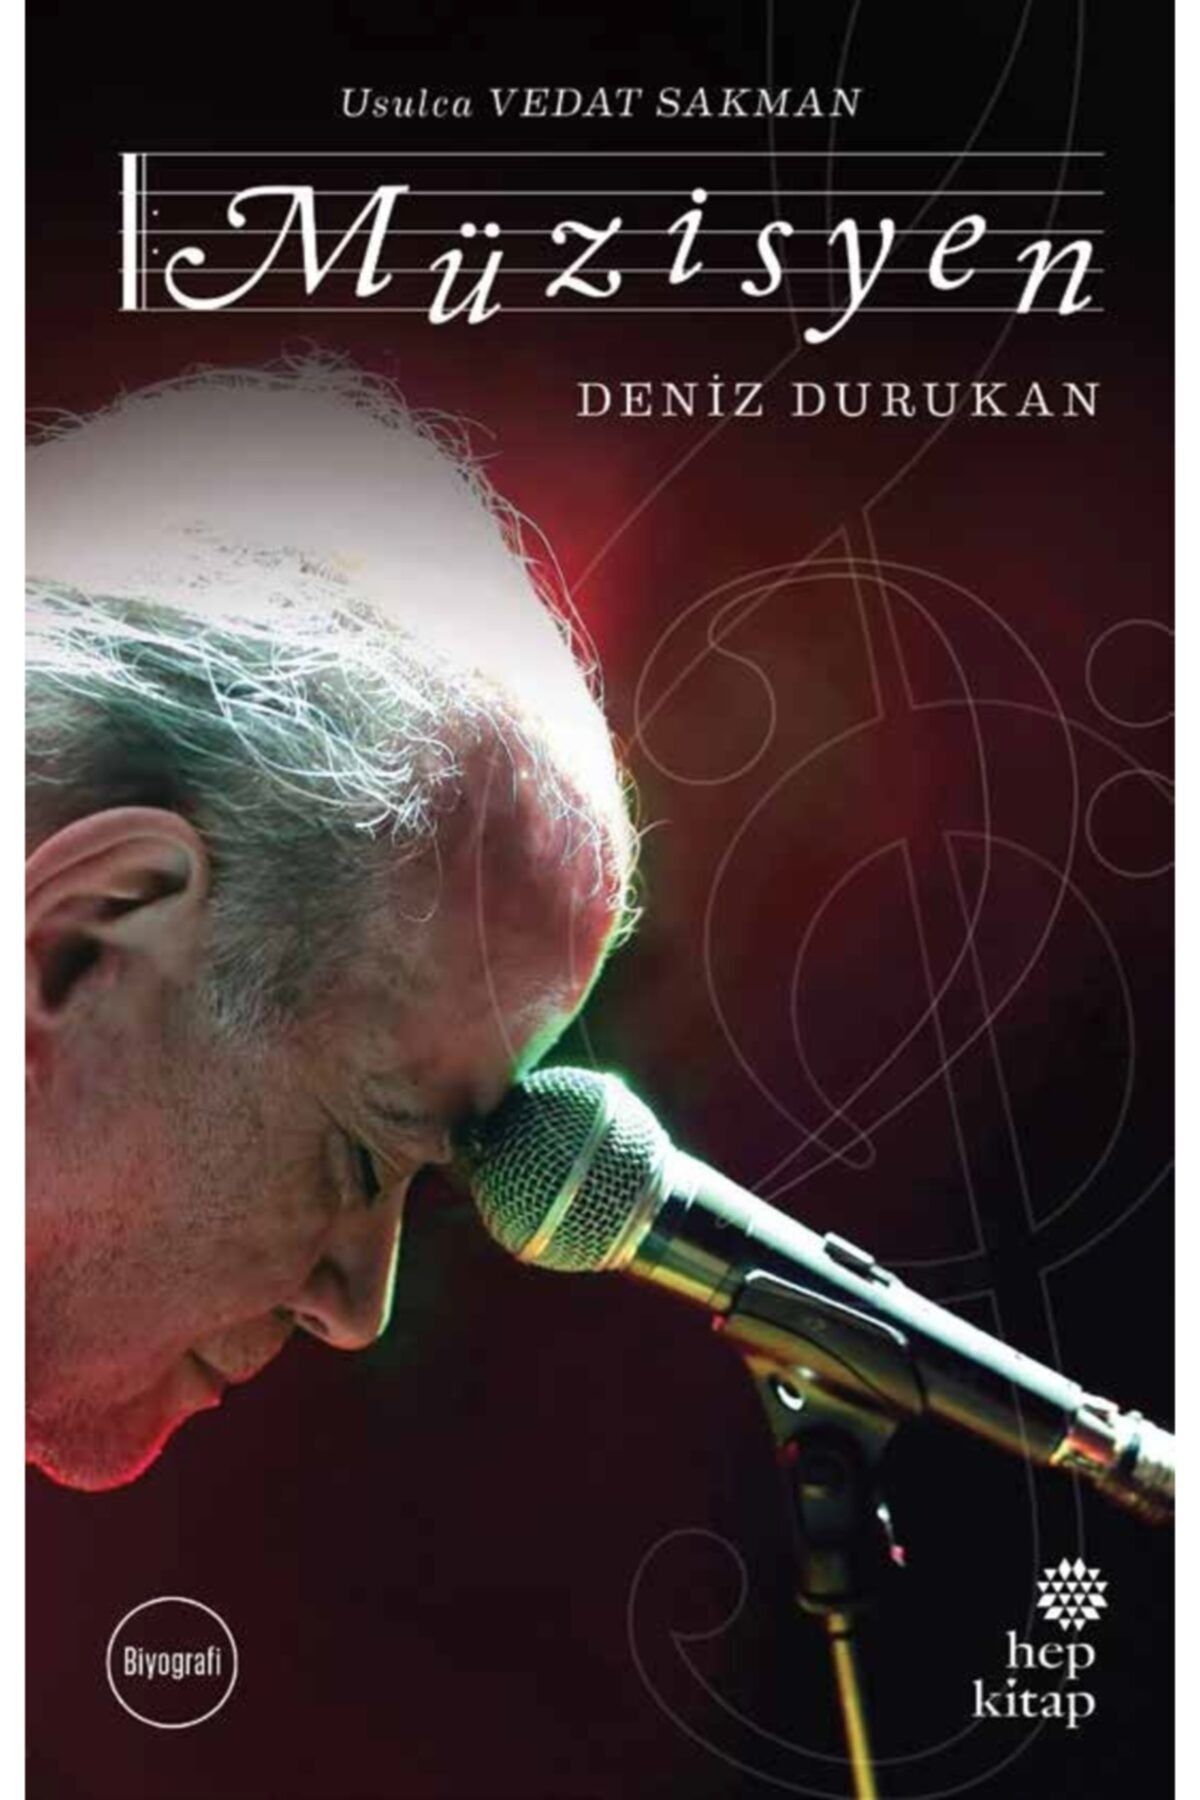 Hep Kitap Usulca Vedat Sakman: Müzisyen - Deniz Durukan